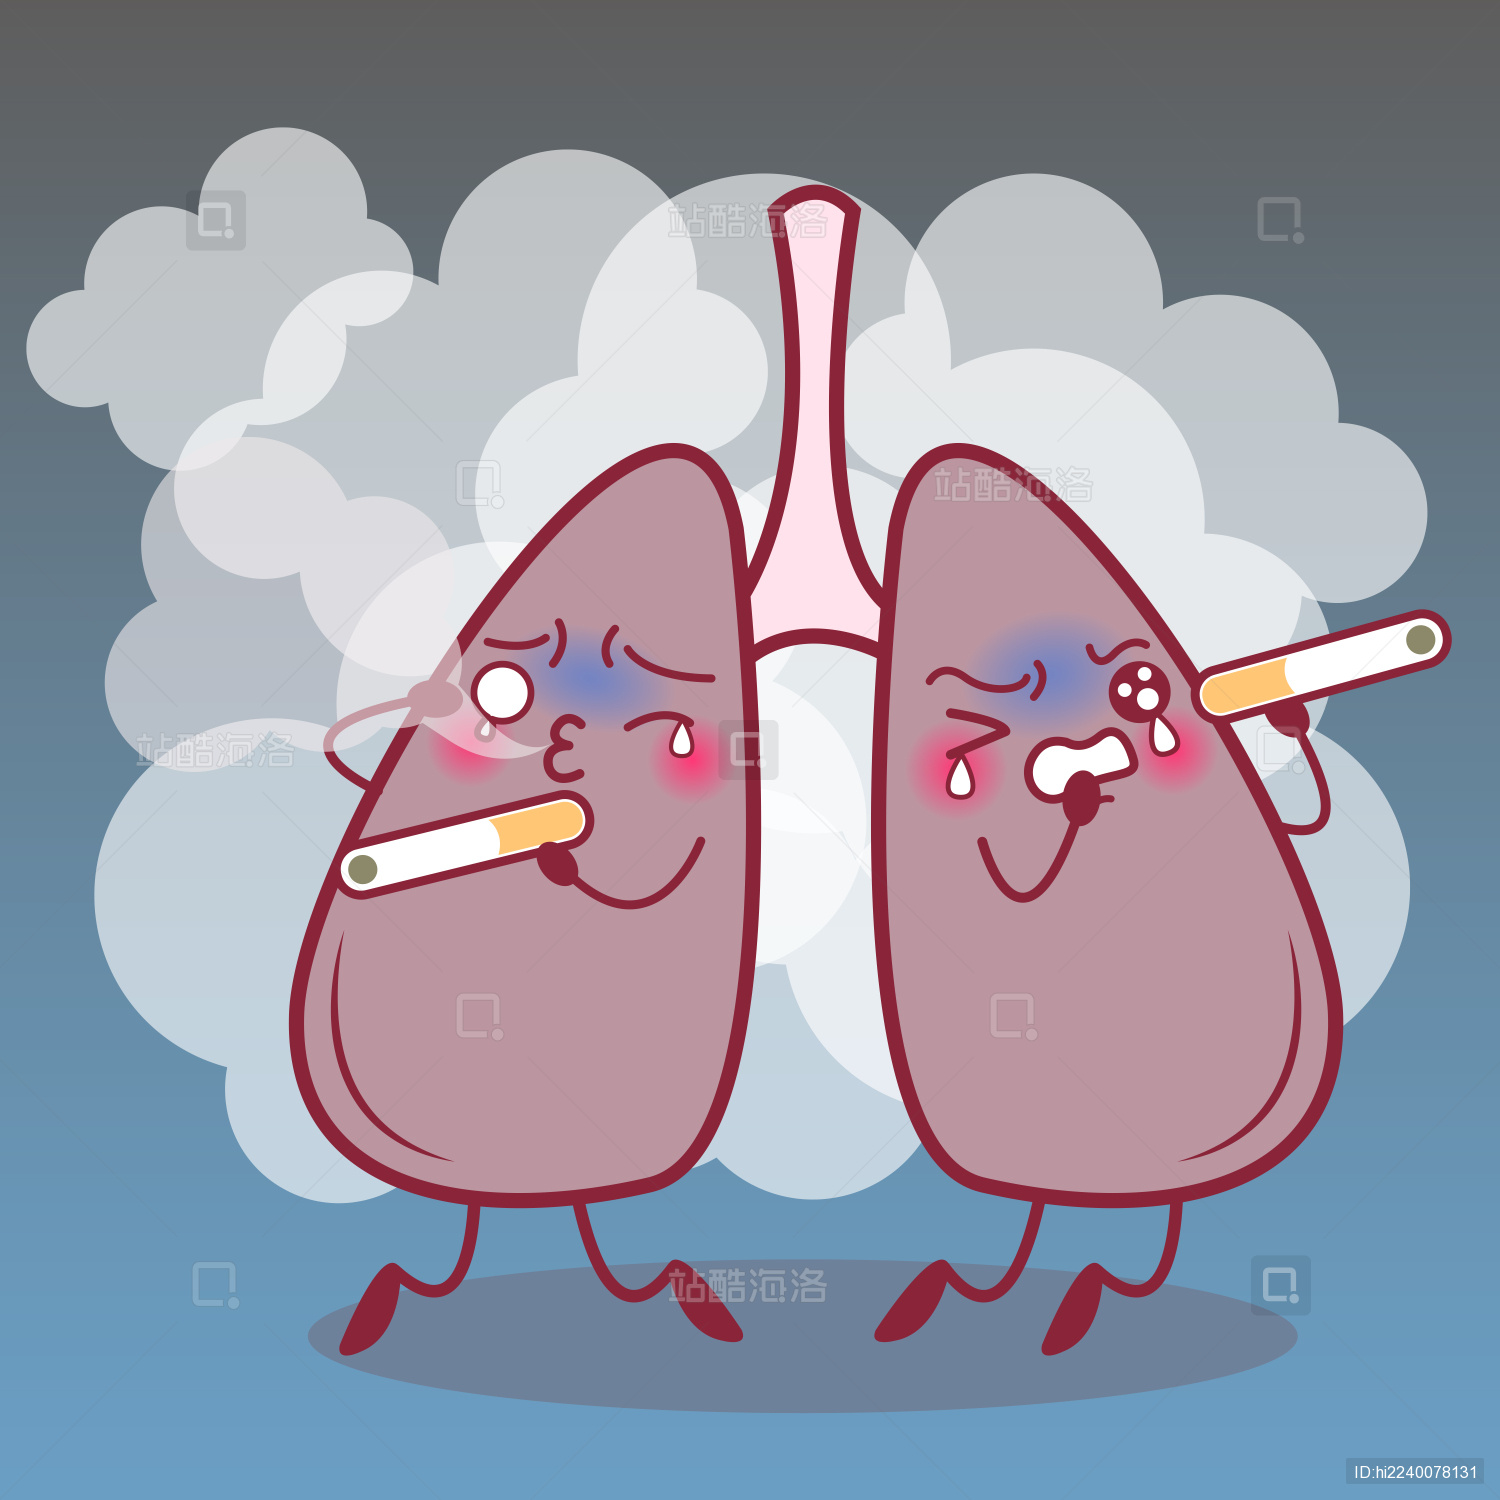 除了吸烟，还有哪些因素会增加患肺癌的几率? - 知乎